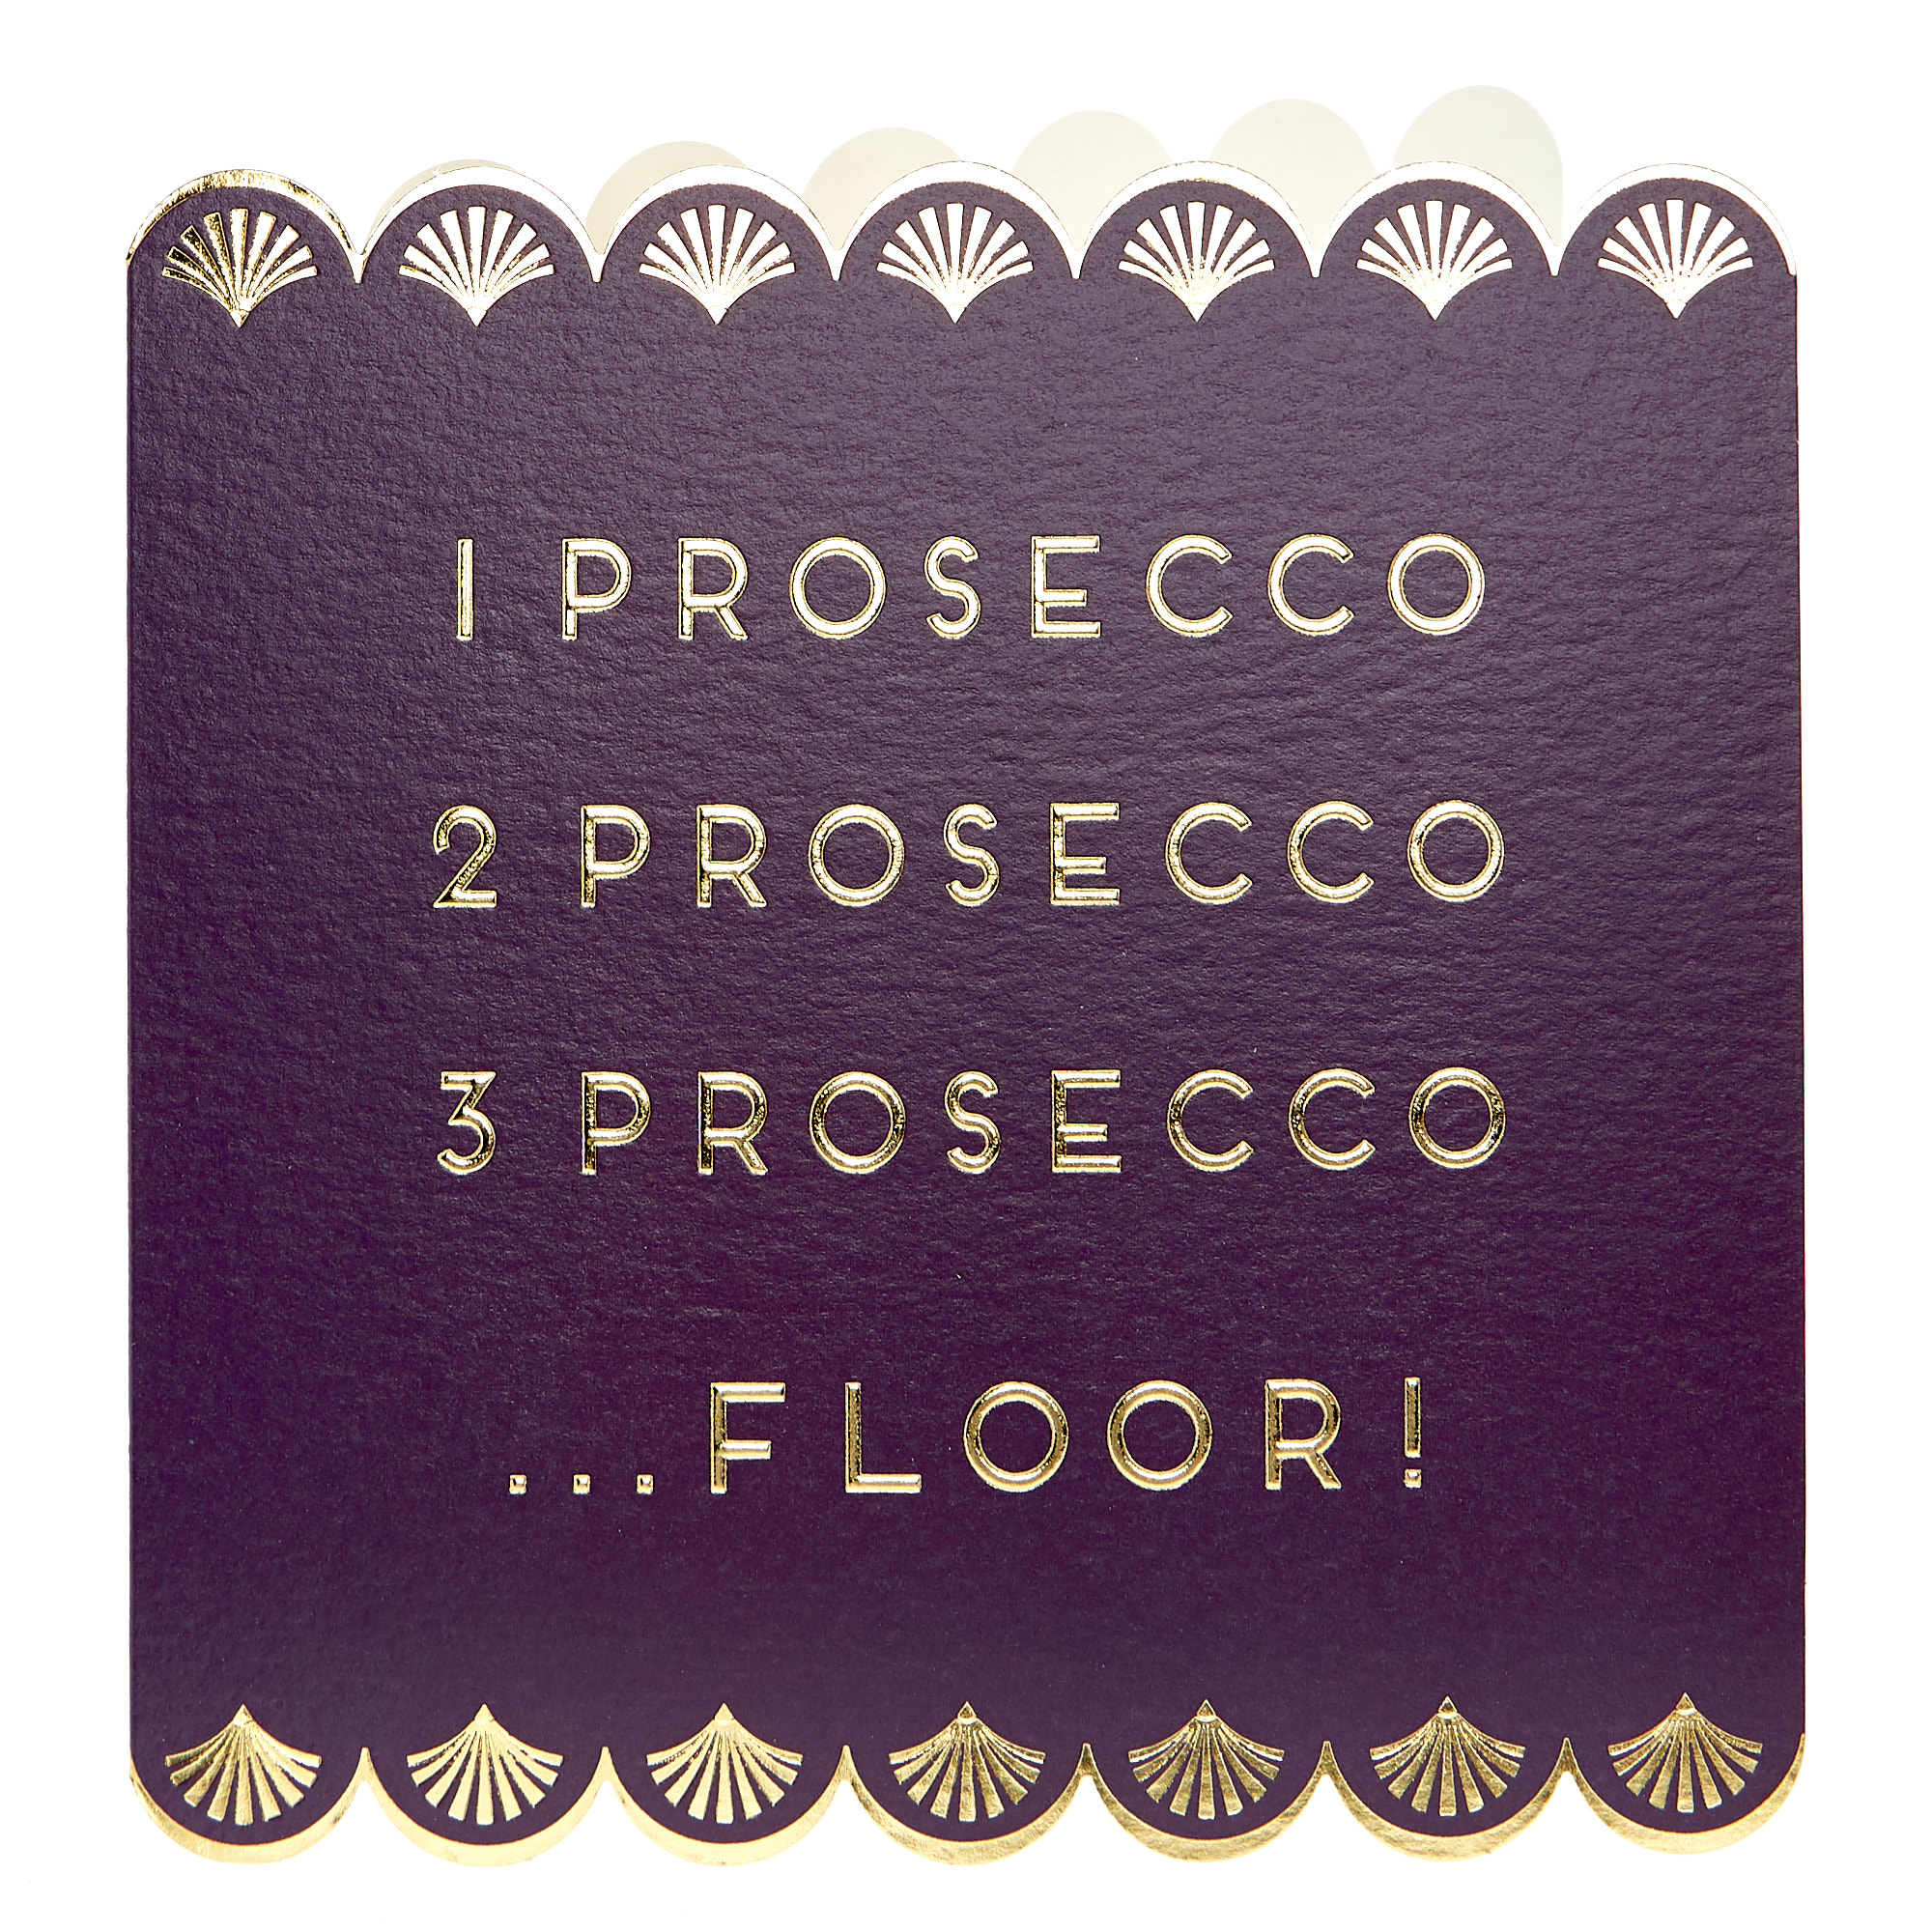 Any Occasion Card - 1 Prosecco, 2 Prosecco...